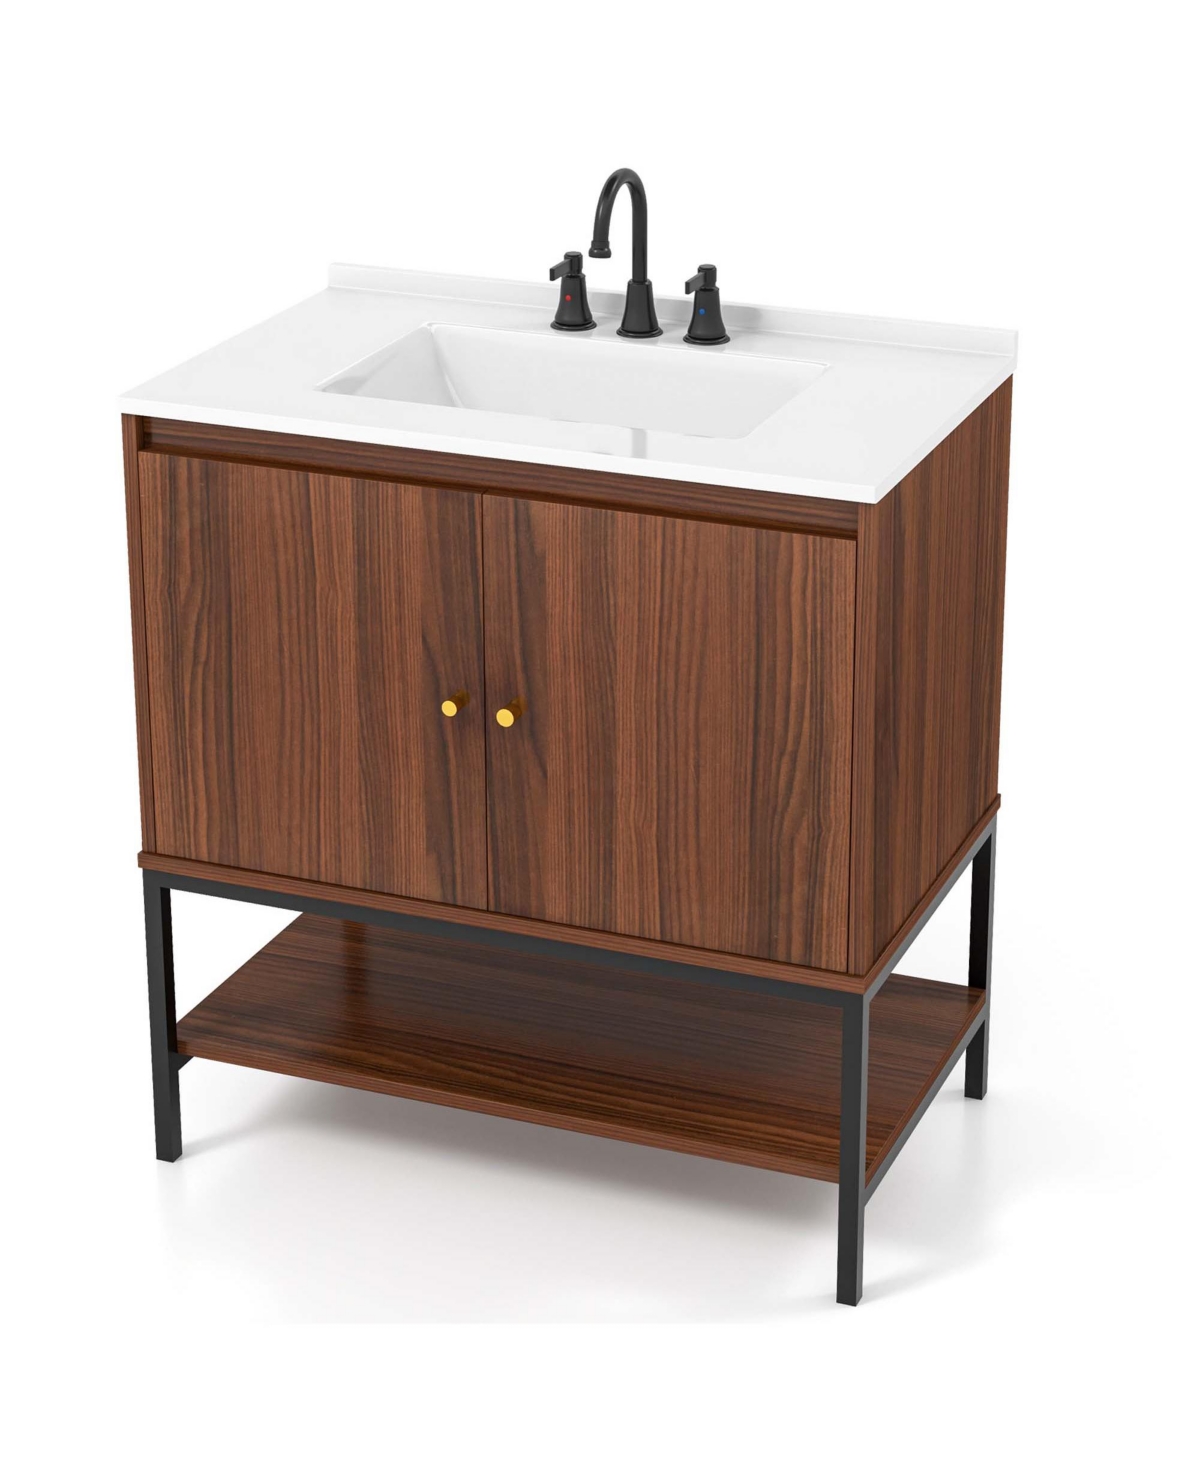 31" Bathroom Vanity Sink Combo Wooden Bathroom Storage Cabinet with Doors - Brown